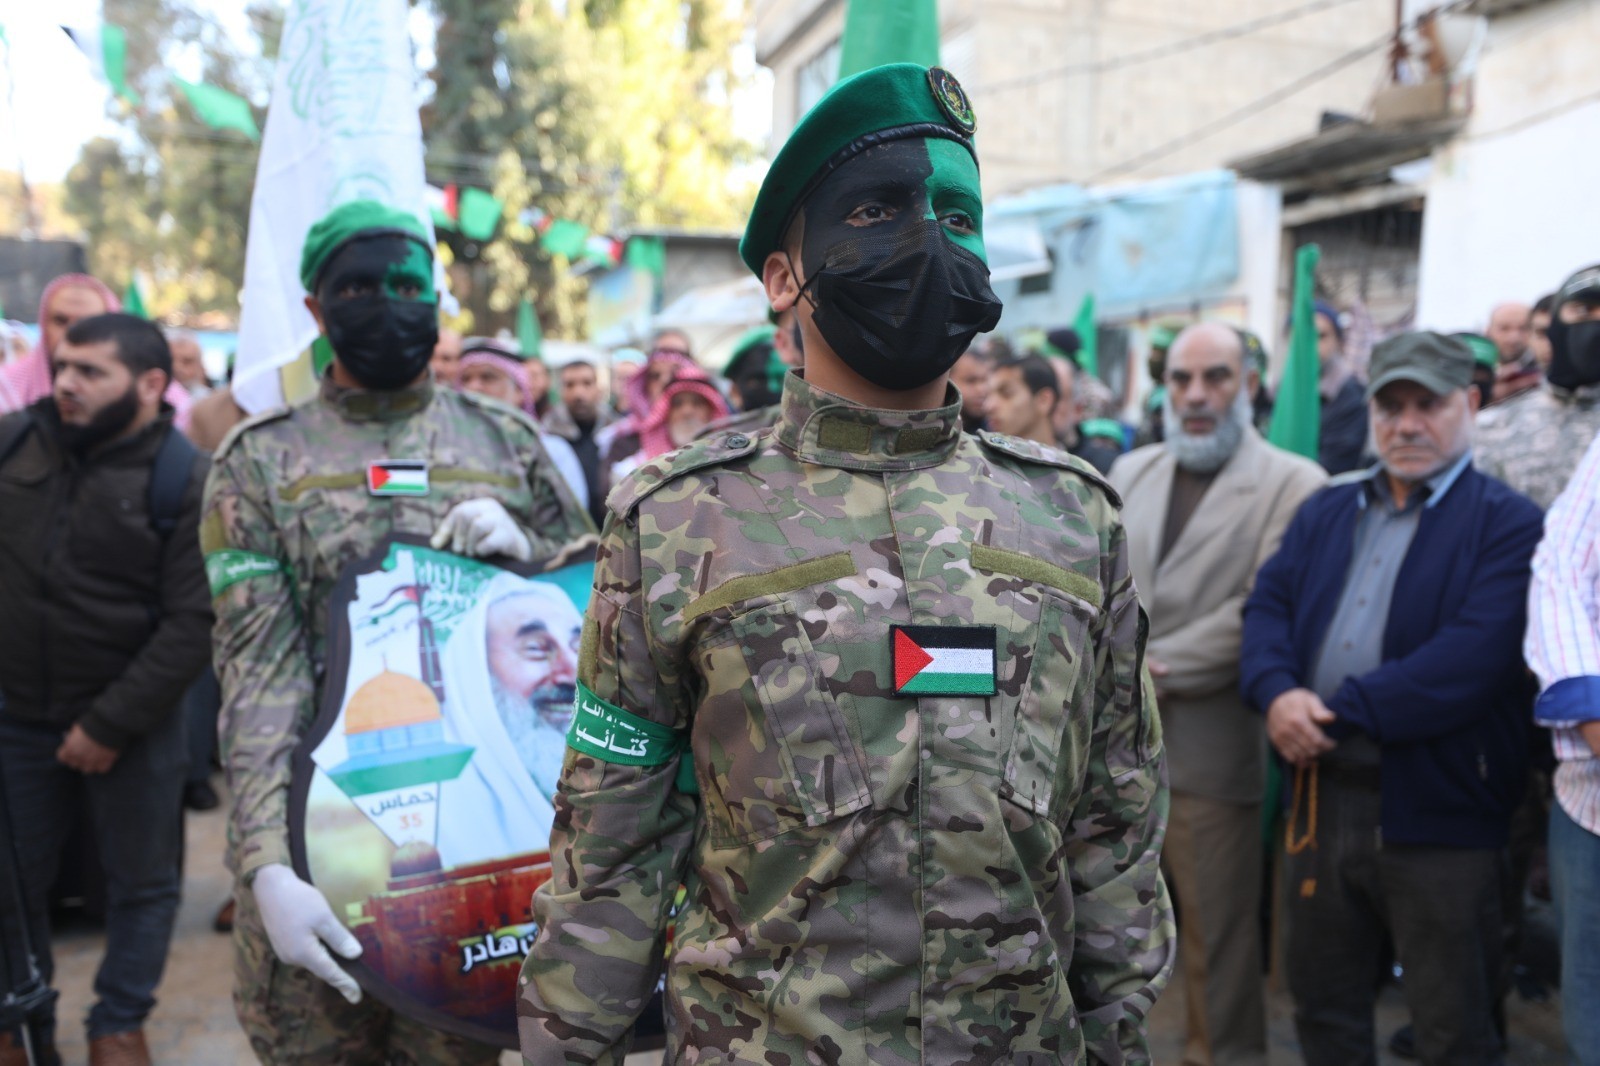 بالصور: "حماس" تُعلن بدء فعاليات إحياء انطلاقتها الـ 35 وسط قطاع غزة